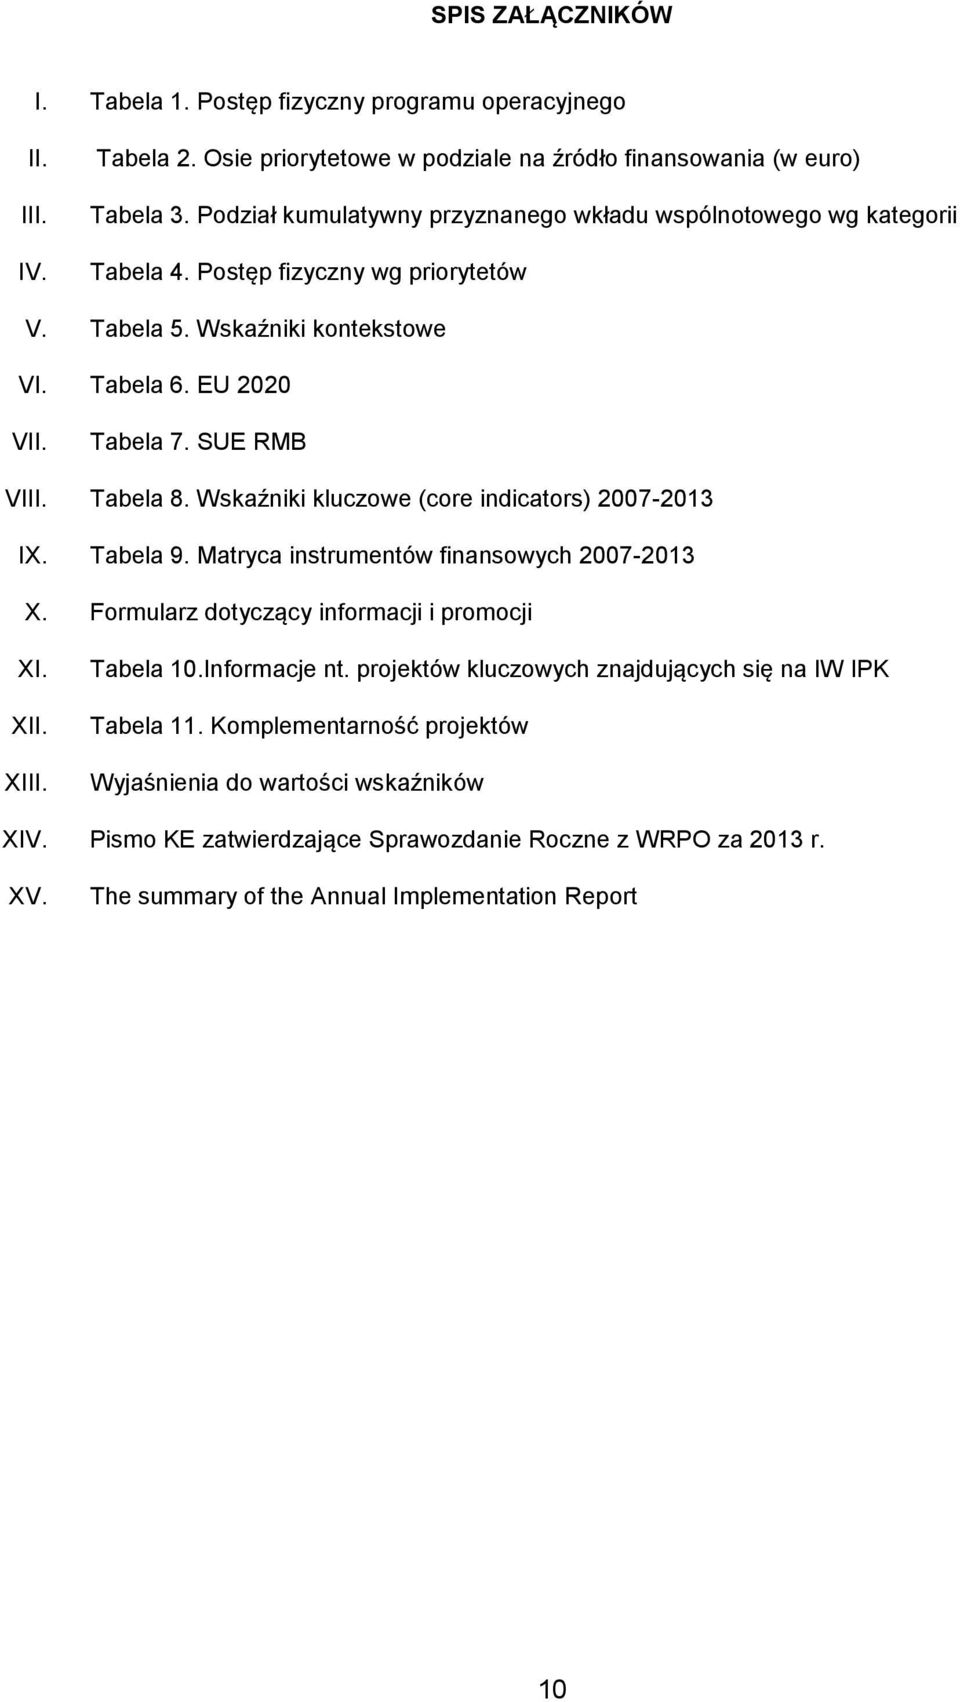 Tabela 8. Wskaźniki kluczowe (core indicators) 2007-2013 IX. Tabela 9. Matryca instrumentów finansowych 2007-2013 X. Formularz dotyczący informacji i promocji XI. XII. XIII. Tabela 10.Informacje nt.